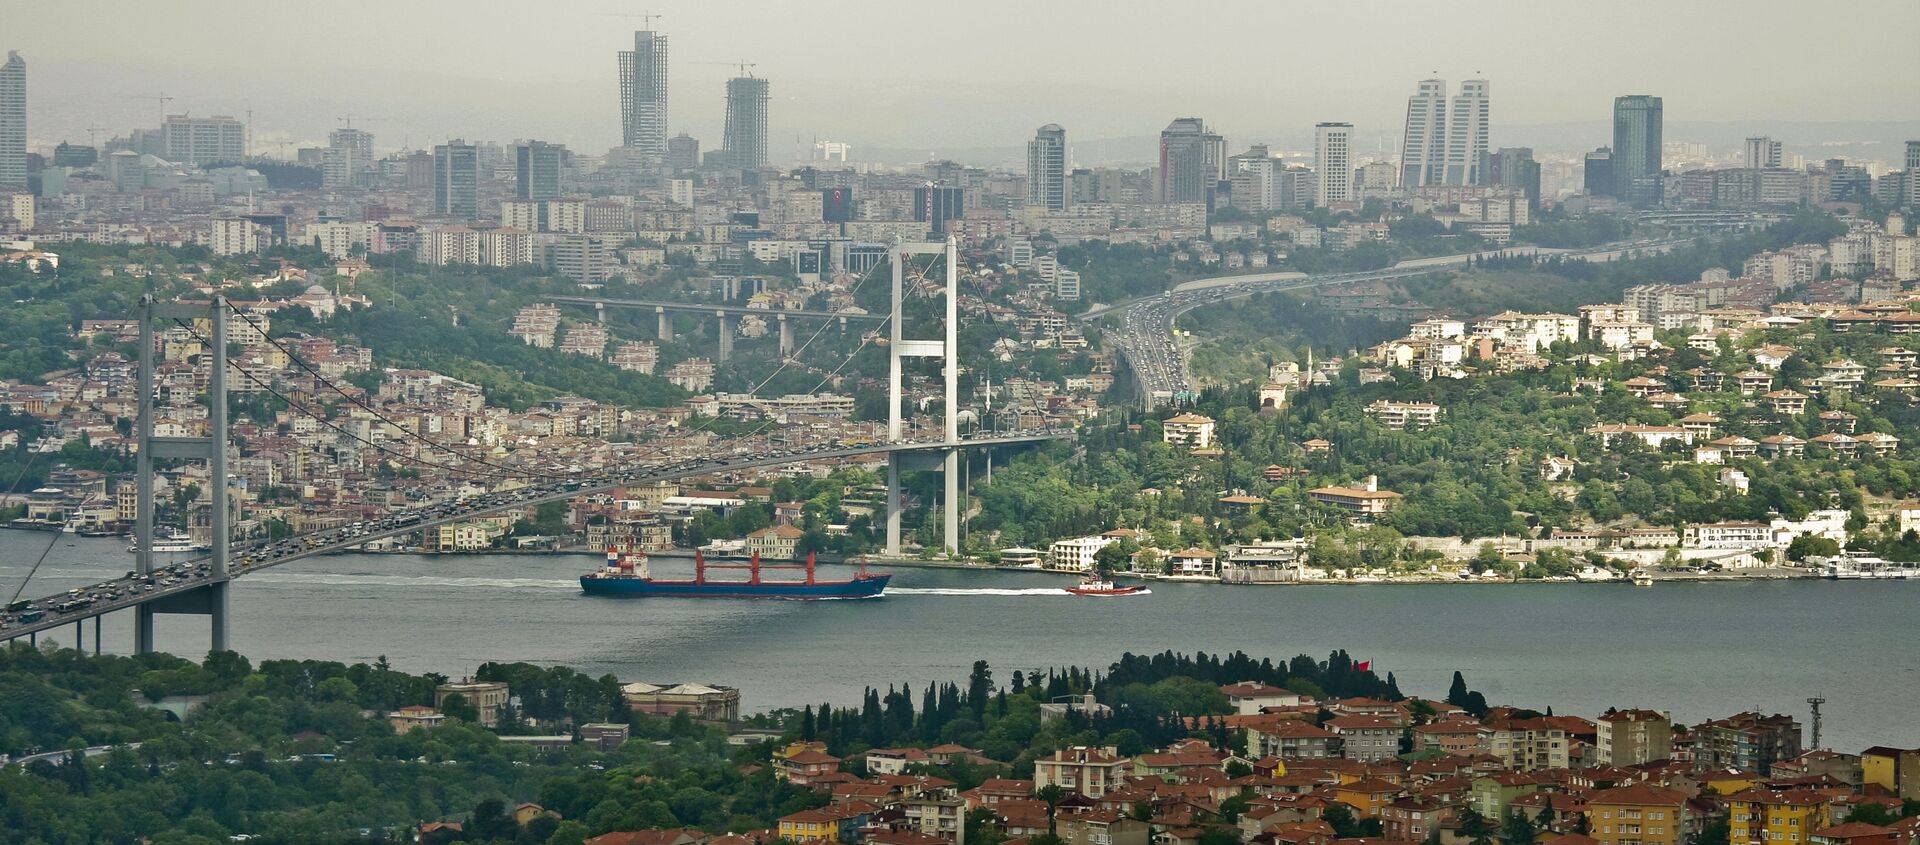 Мост через пролив Босфор, соединяющий азиатскую и европейскую части города Стамбула. - Sputnik Абхазия, 1920, 09.04.2021